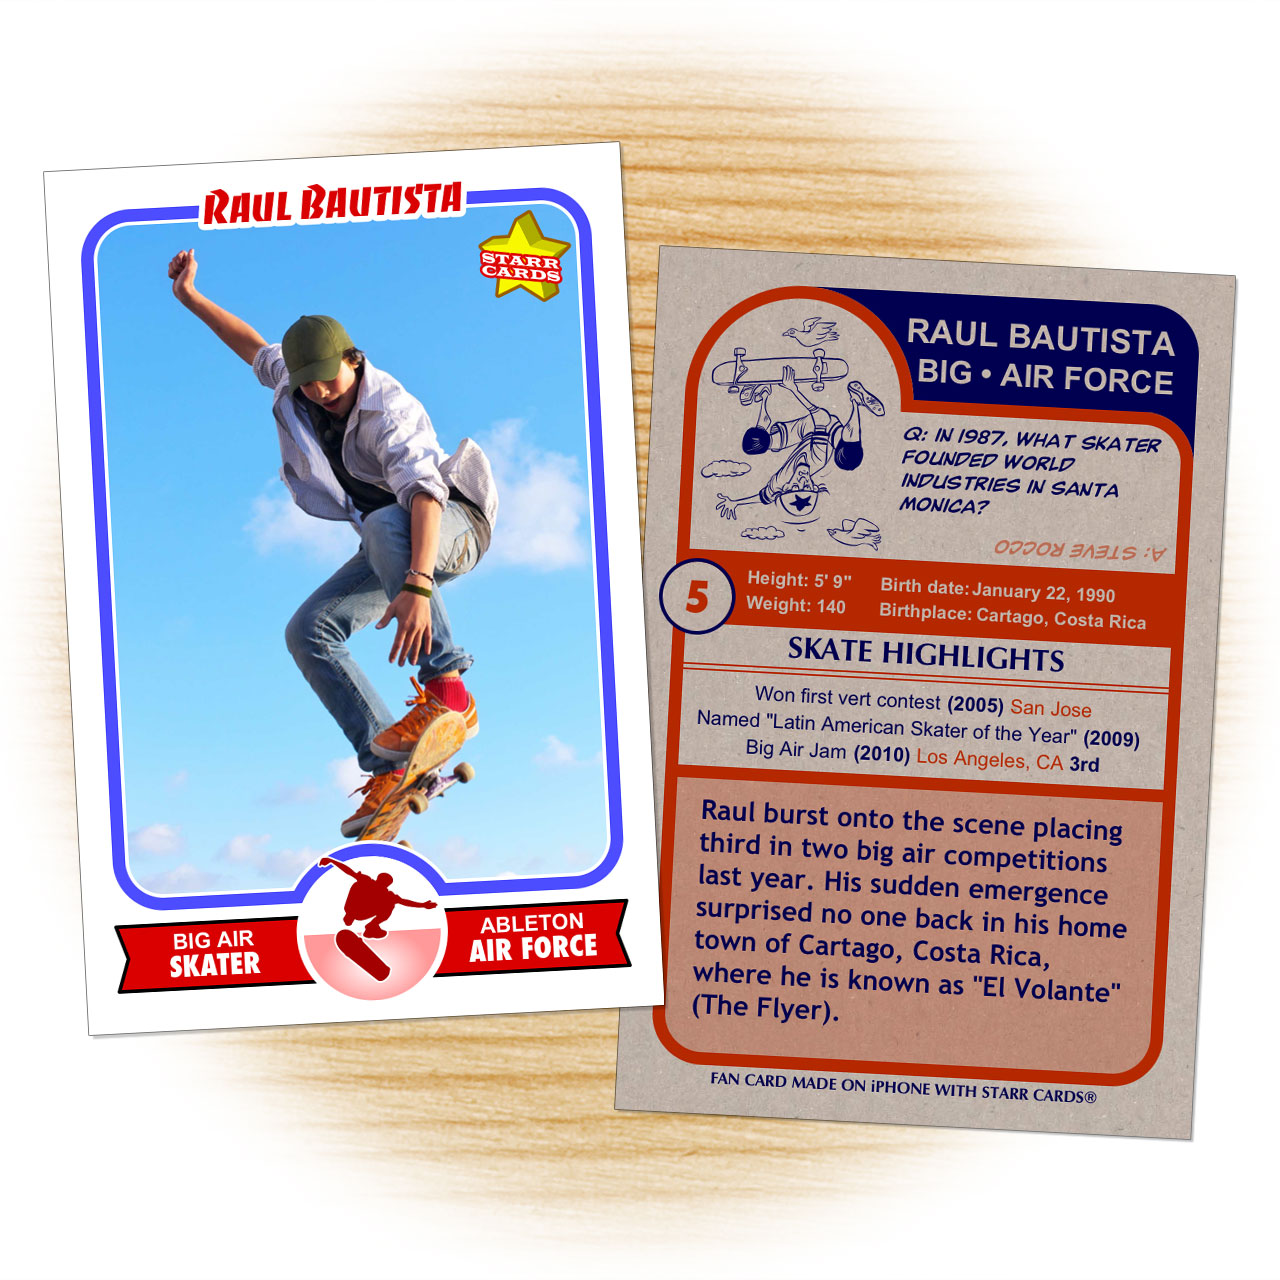 Skater card template from Starr Cards Skateboarding Card Maker.